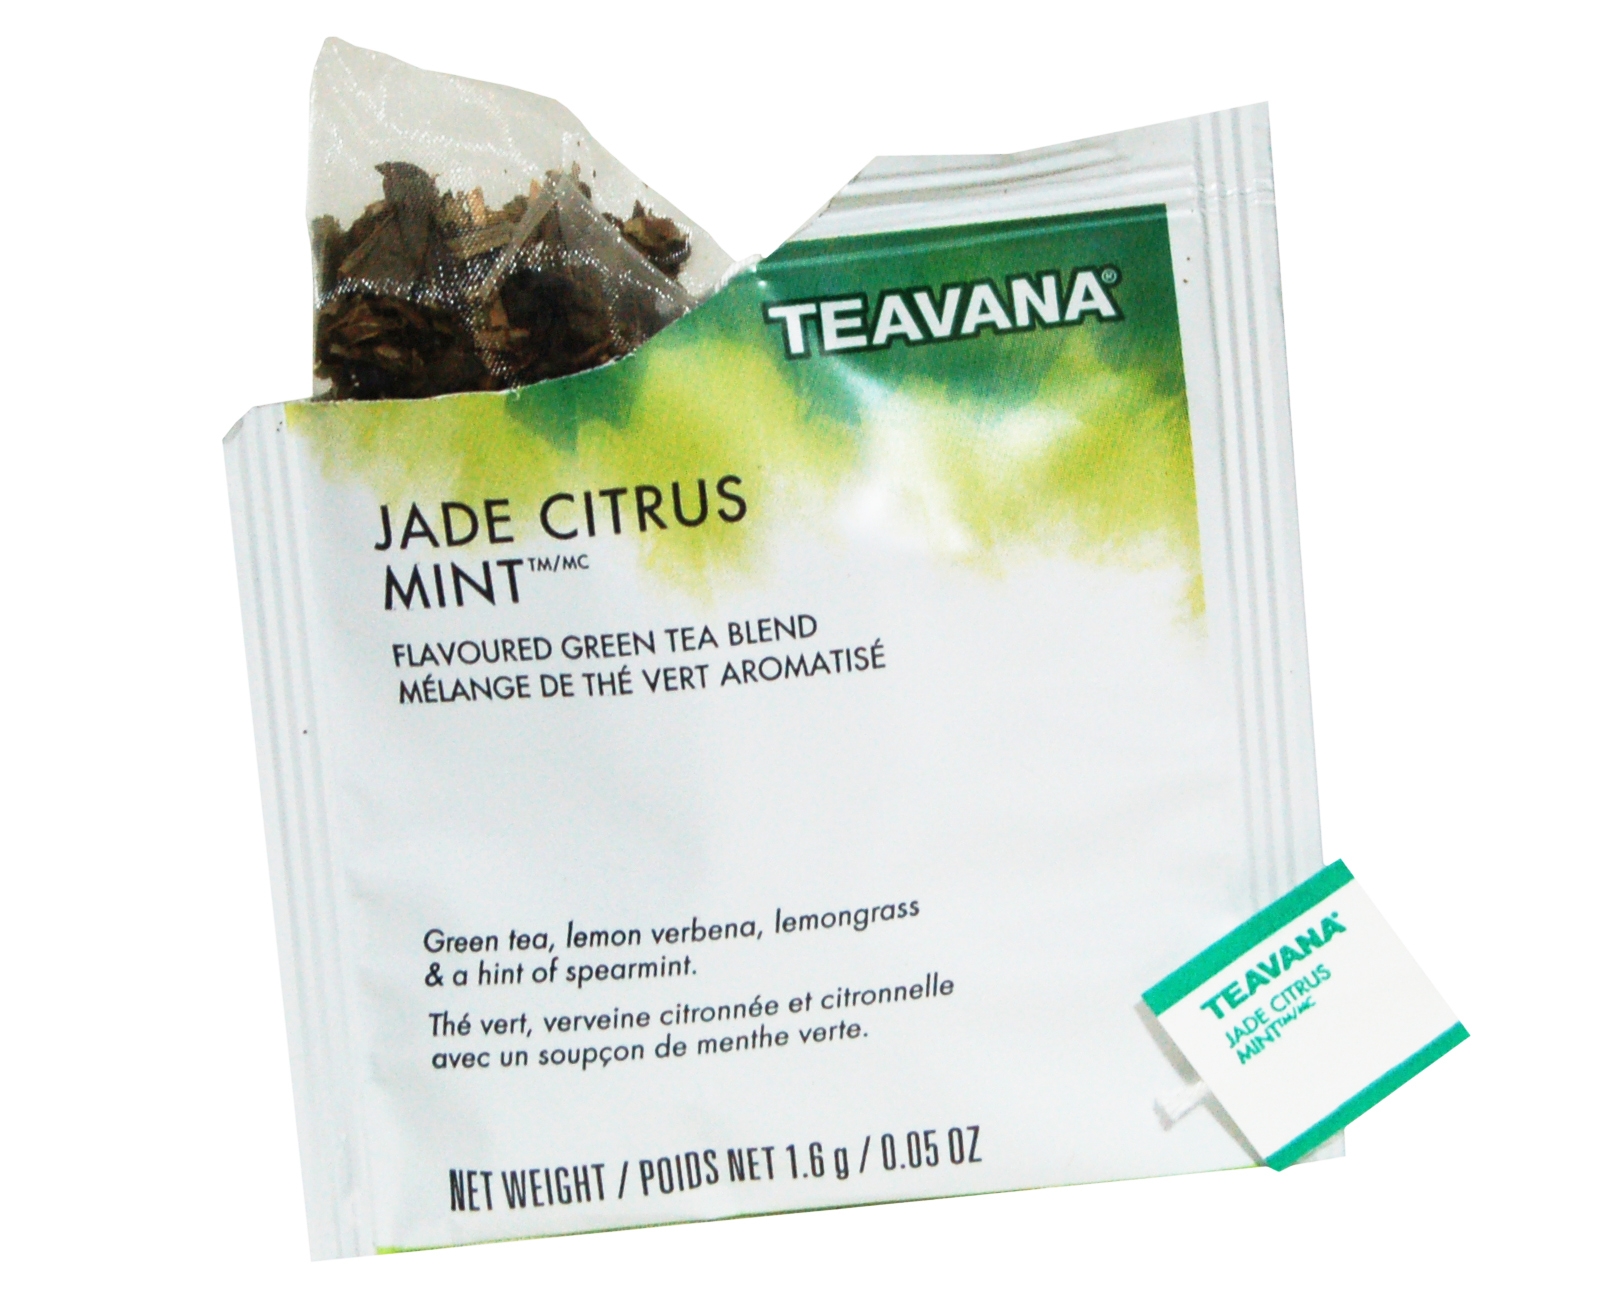 Jade Citrus Mint Tea